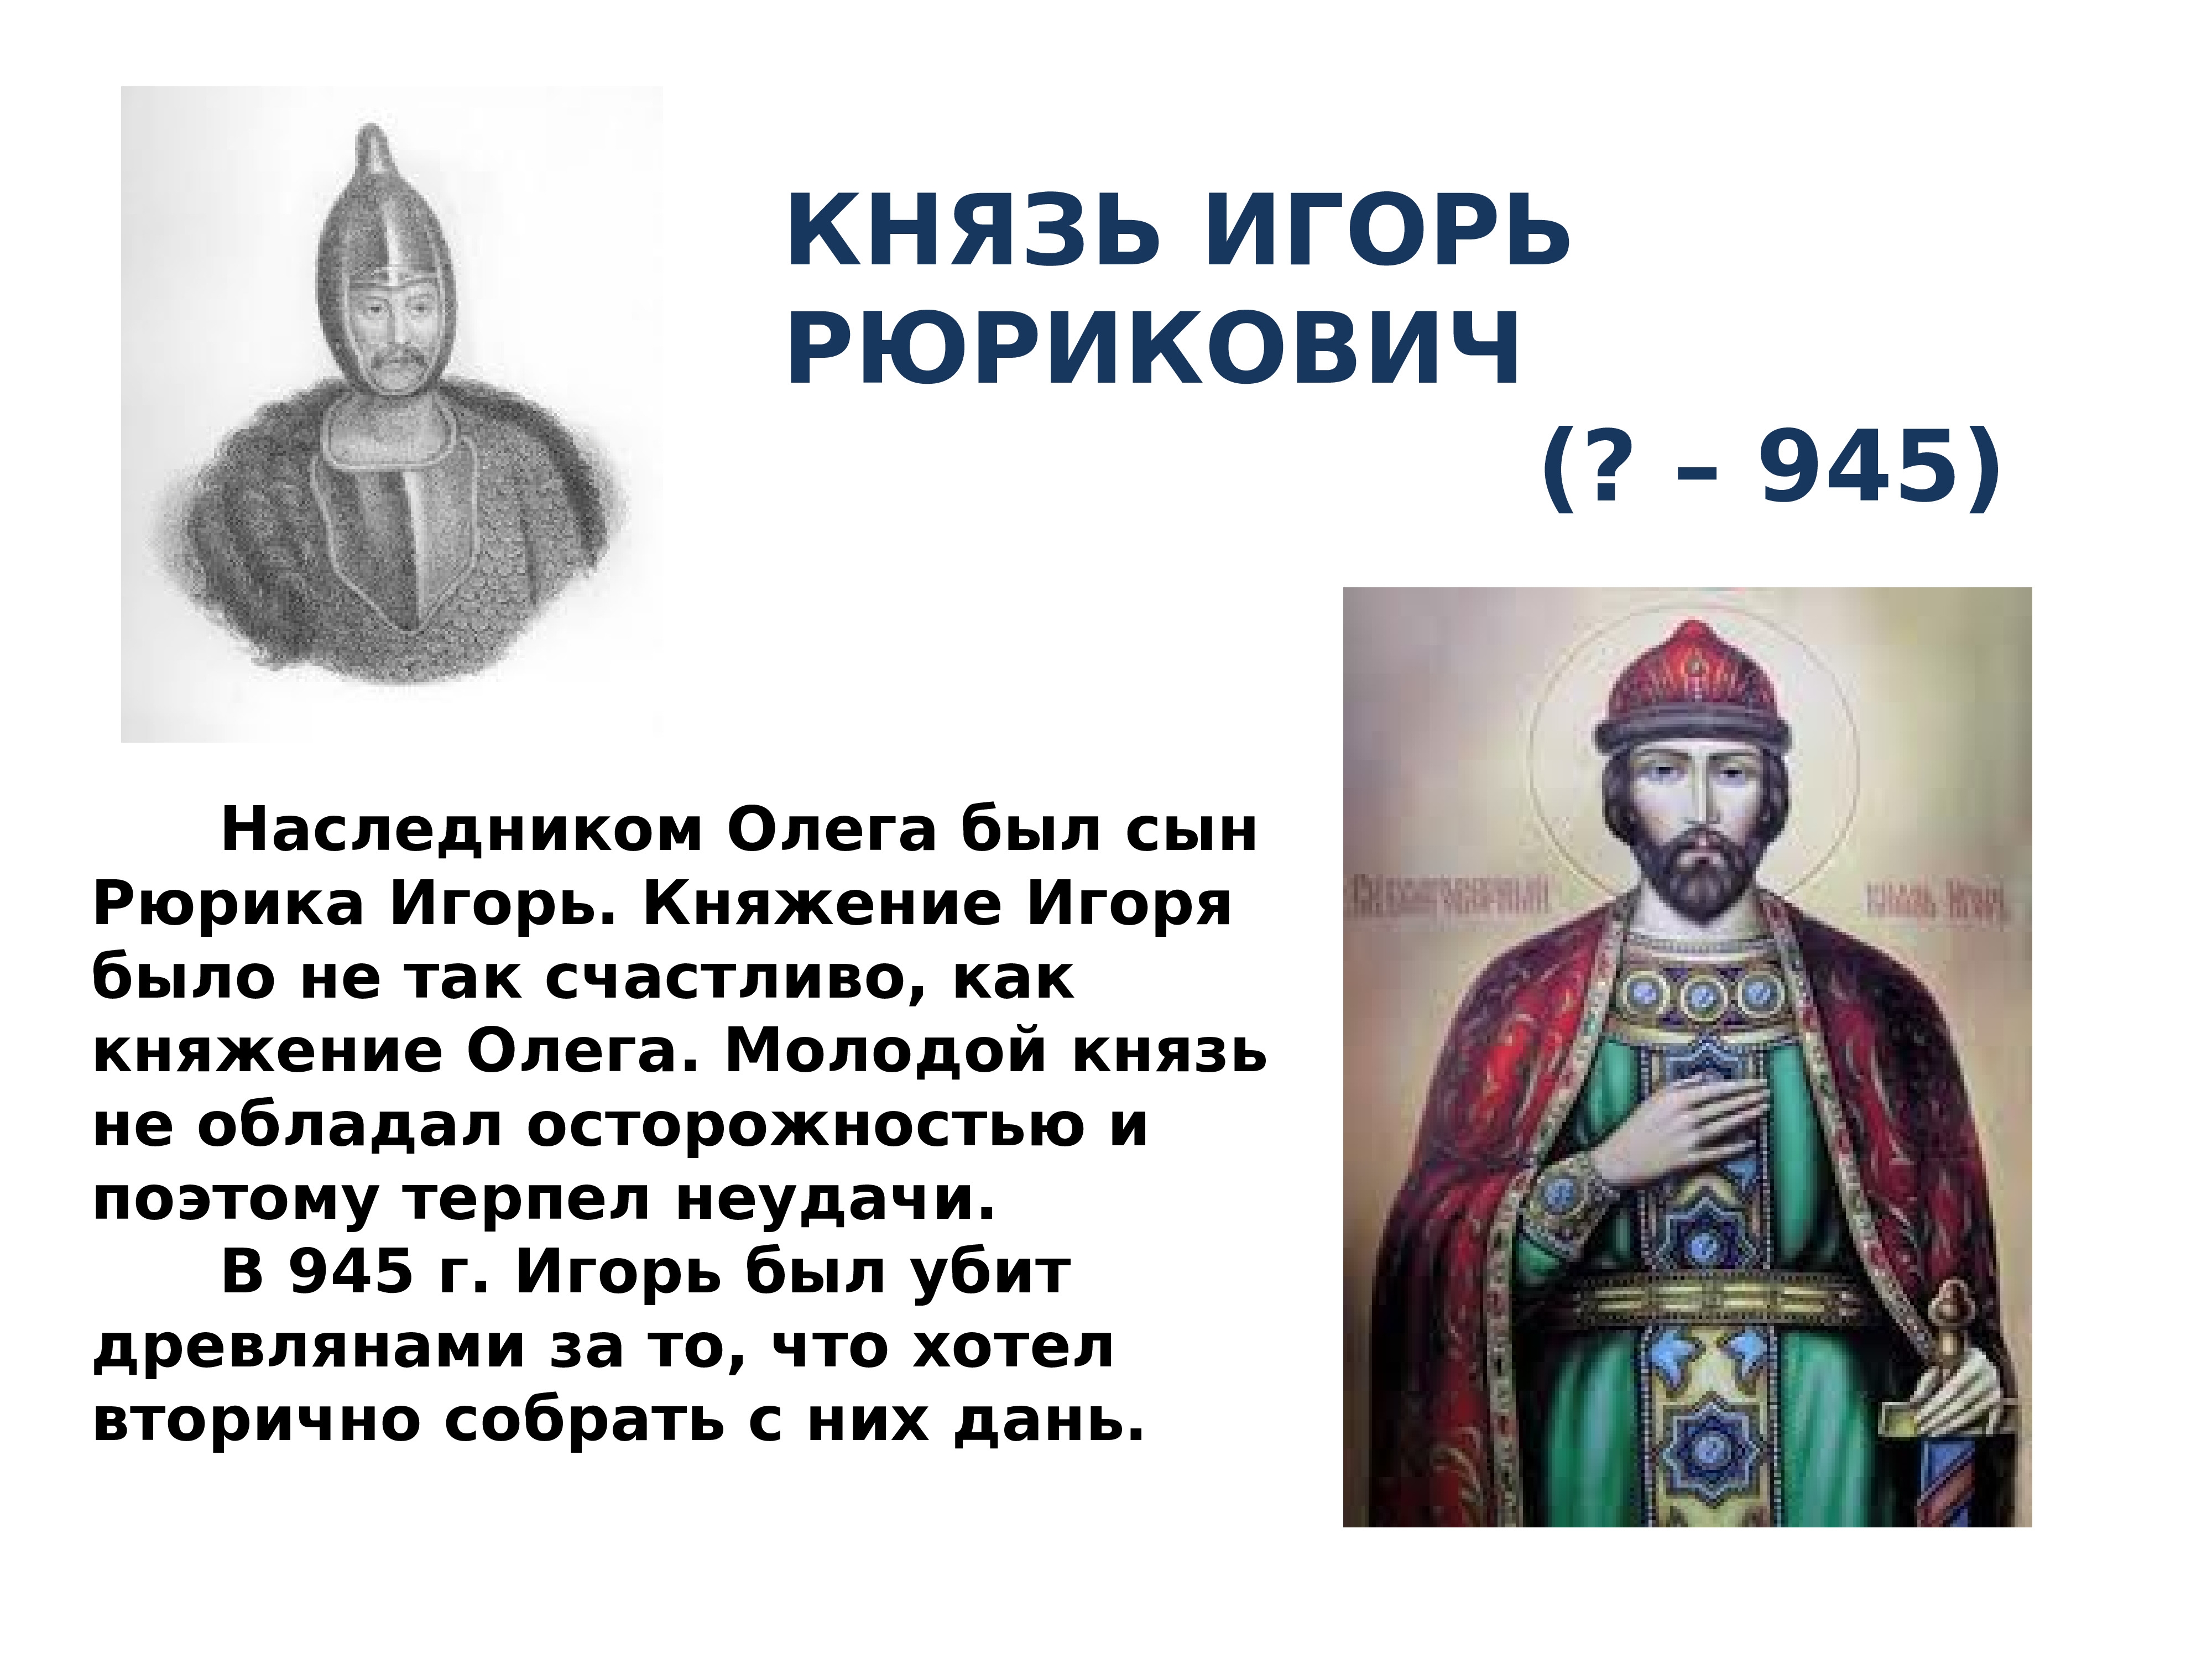 Портреты князей древней Руси